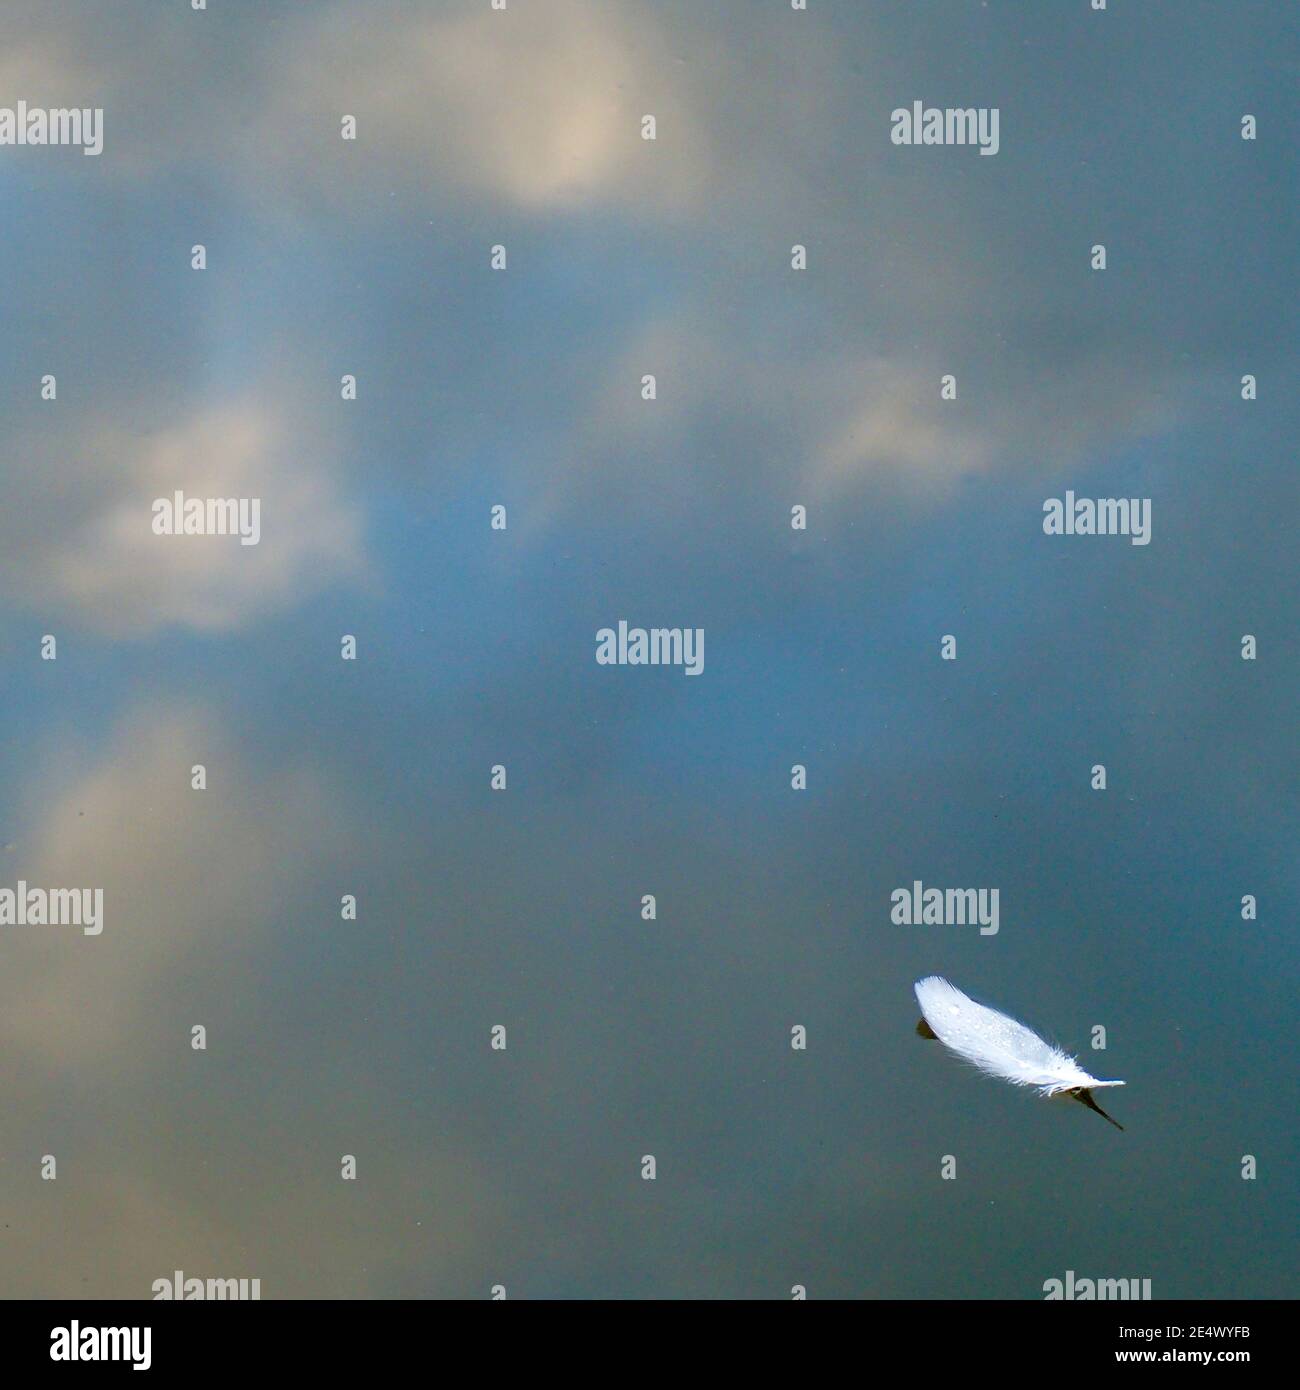 Une seule plume flottant sur un lac, avec des reflets de ciel derrière Banque D'Images